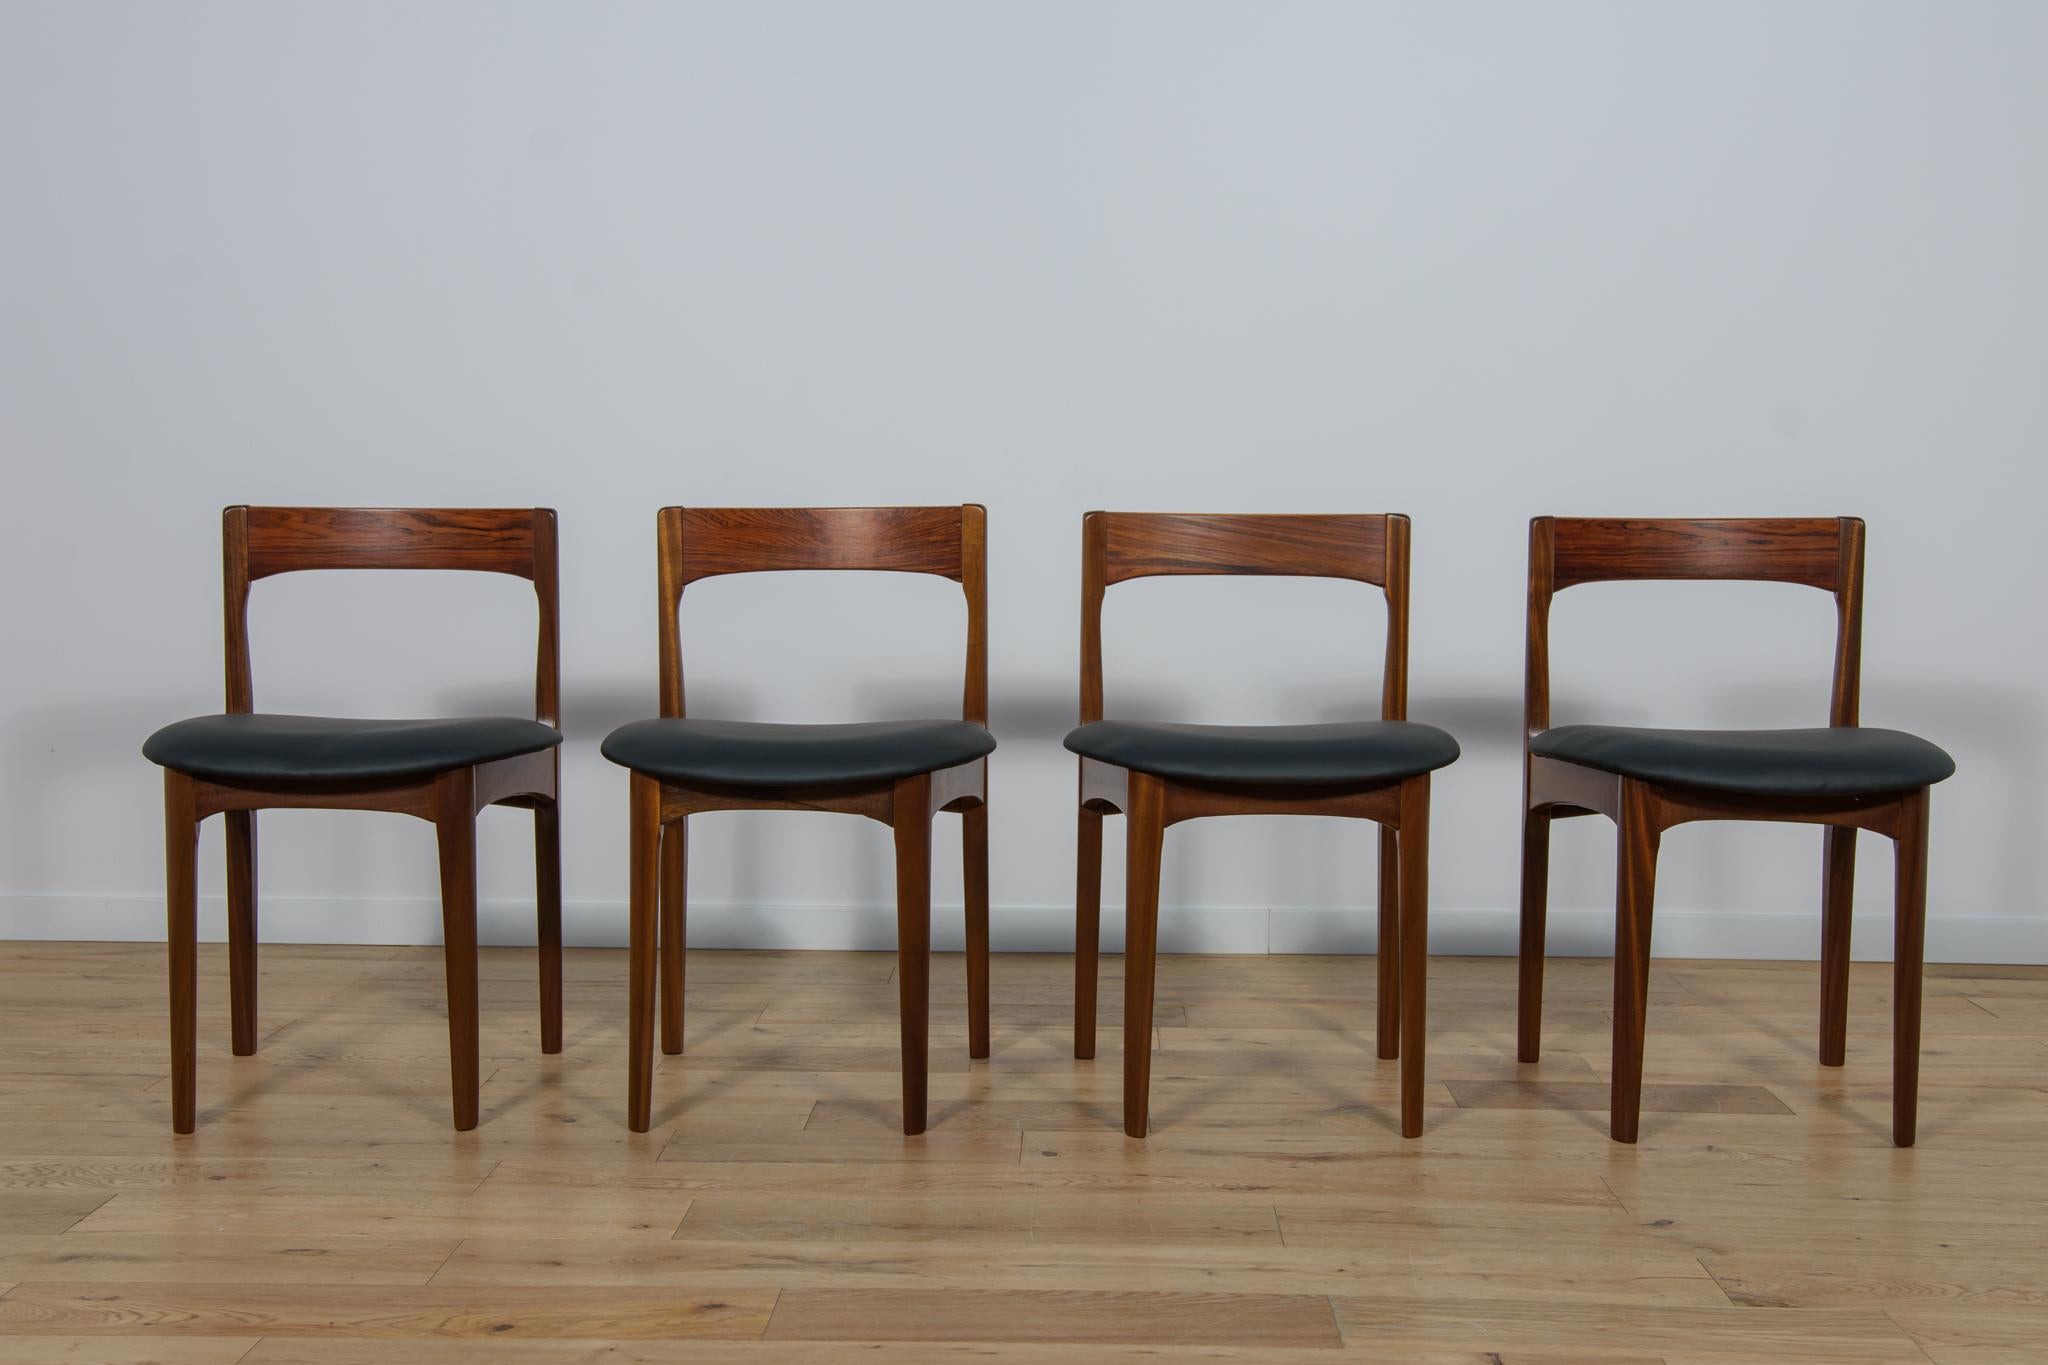 Cet ensemble de quatre chaises a été produit en Grande-Bretagne dans les années 1960. La structure des chaises est en teck, les dossiers sont en palissandre. Les meubles ont été entièrement rénovés, nettoyés des anciens revêtements, peints avec de